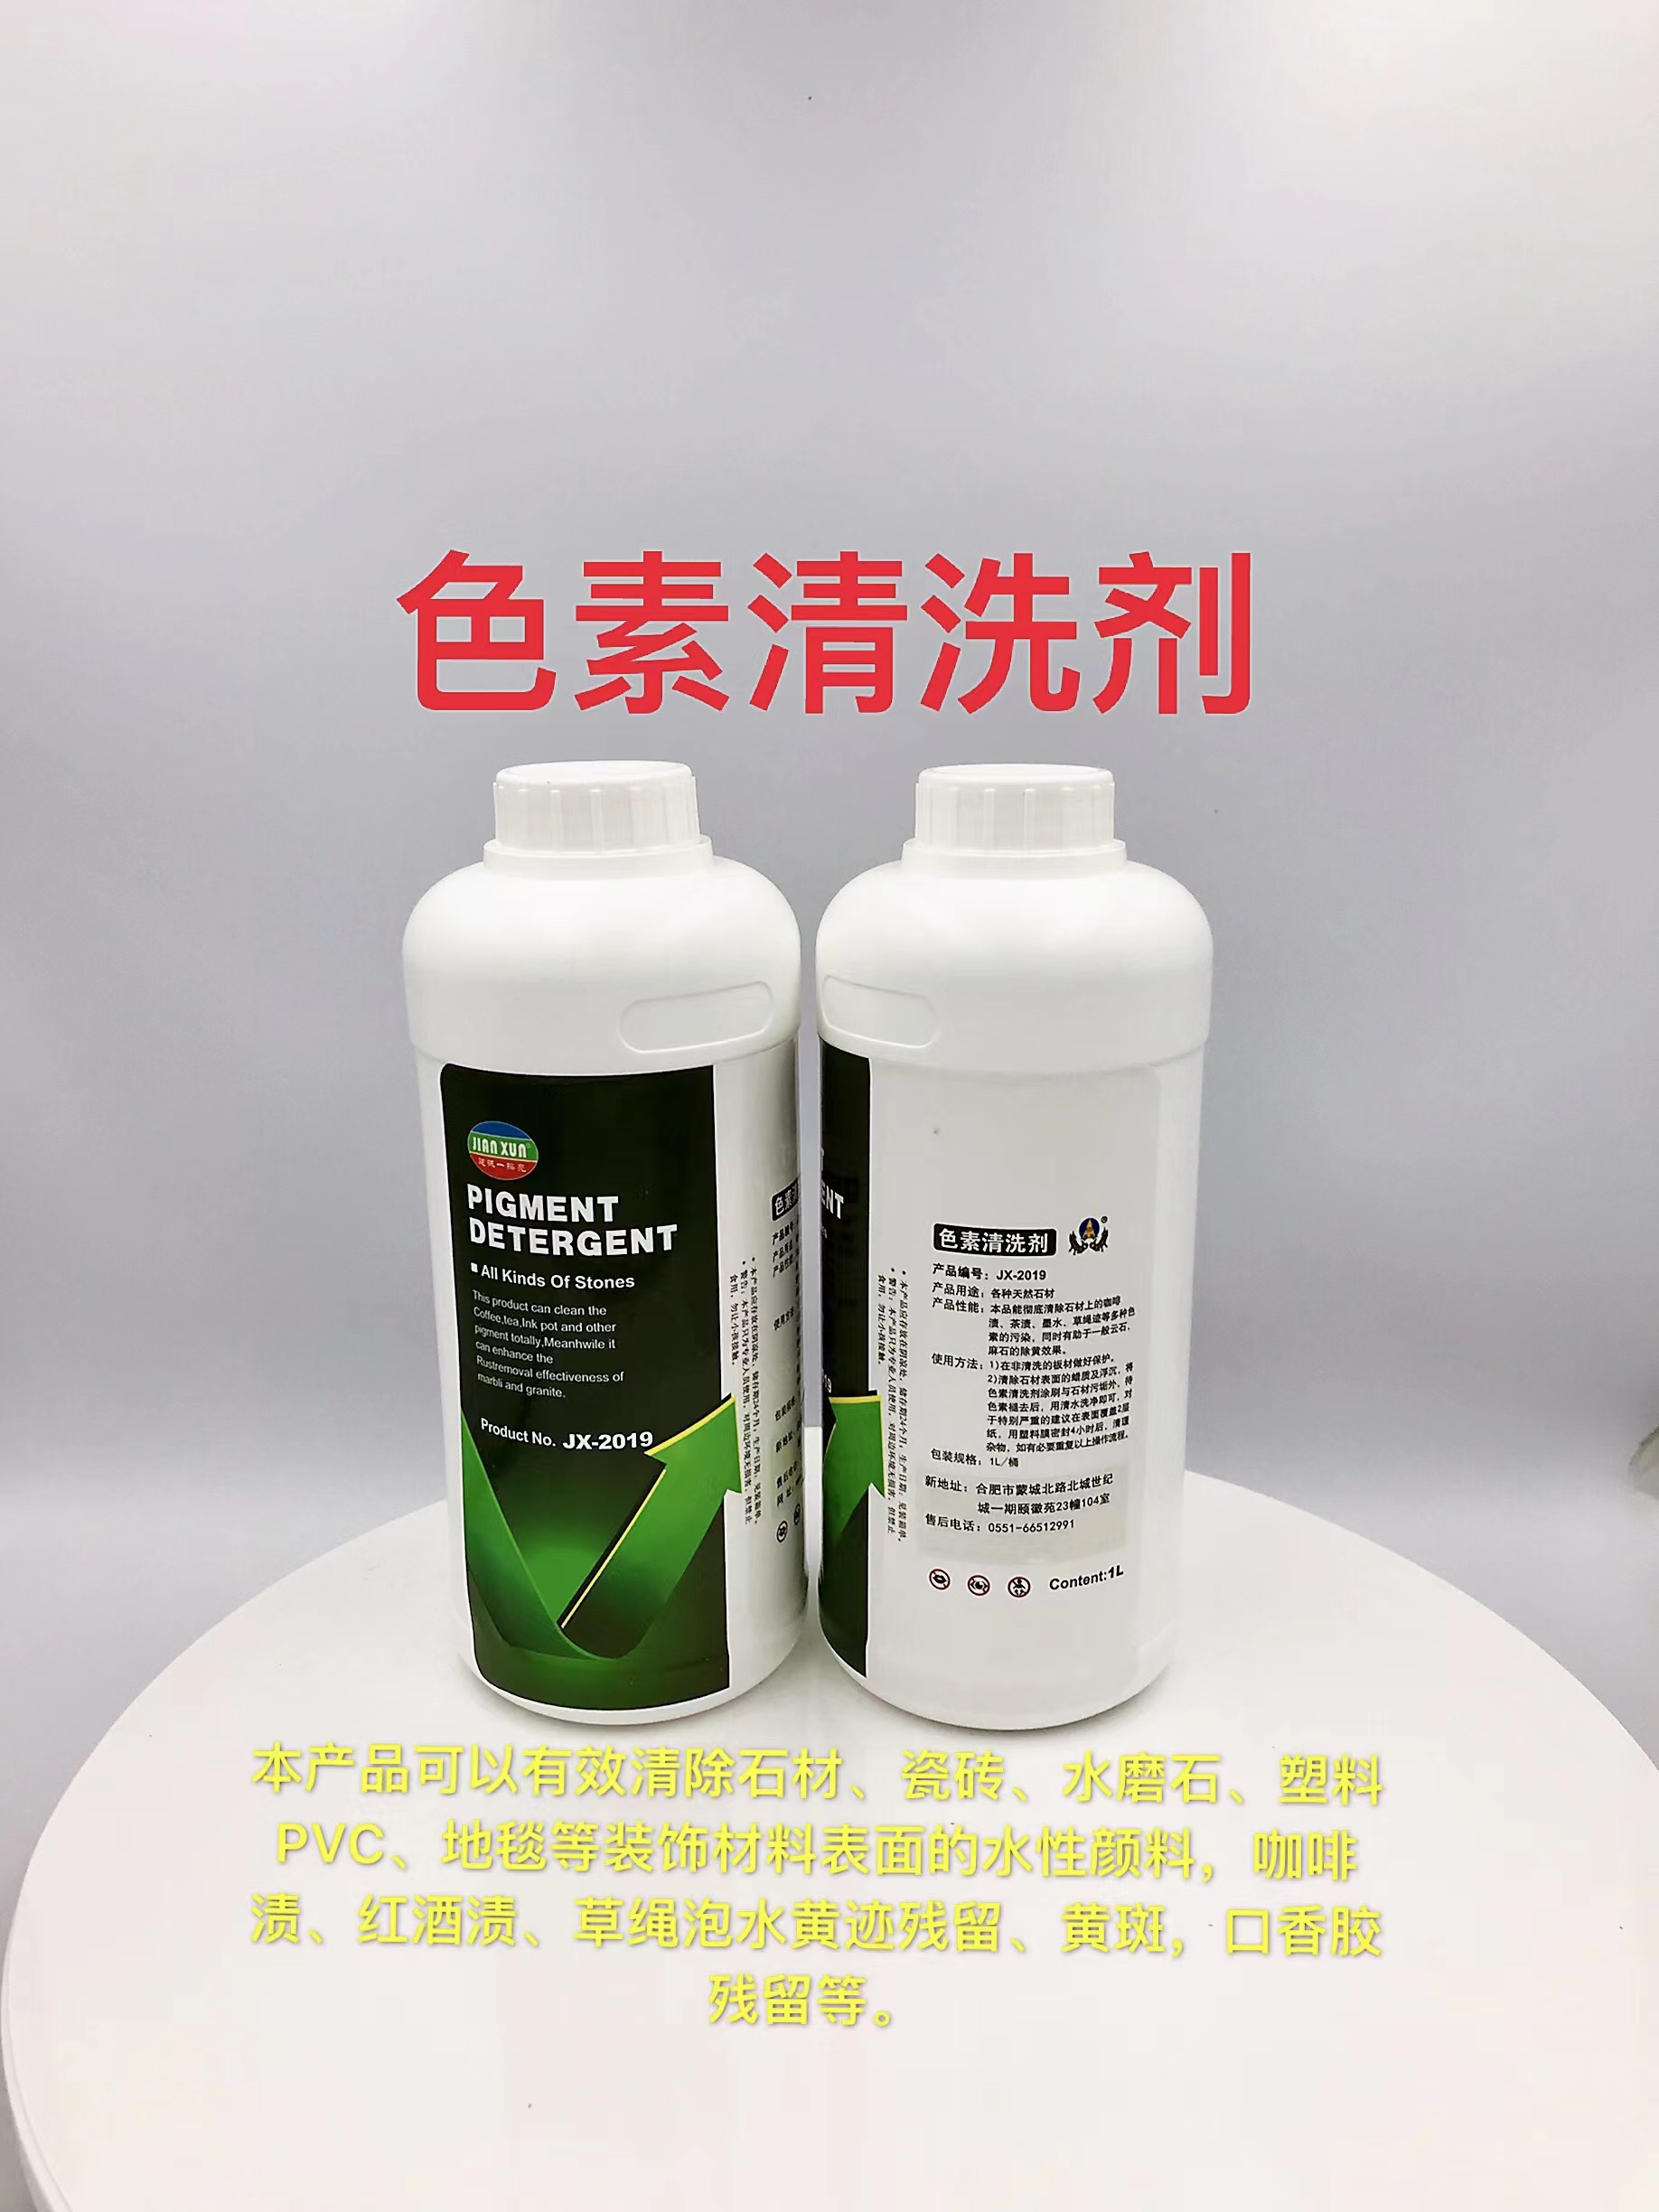 JX-2019石材花岗岩色素清洗剂生产厂家销售价格 建讯石材图片